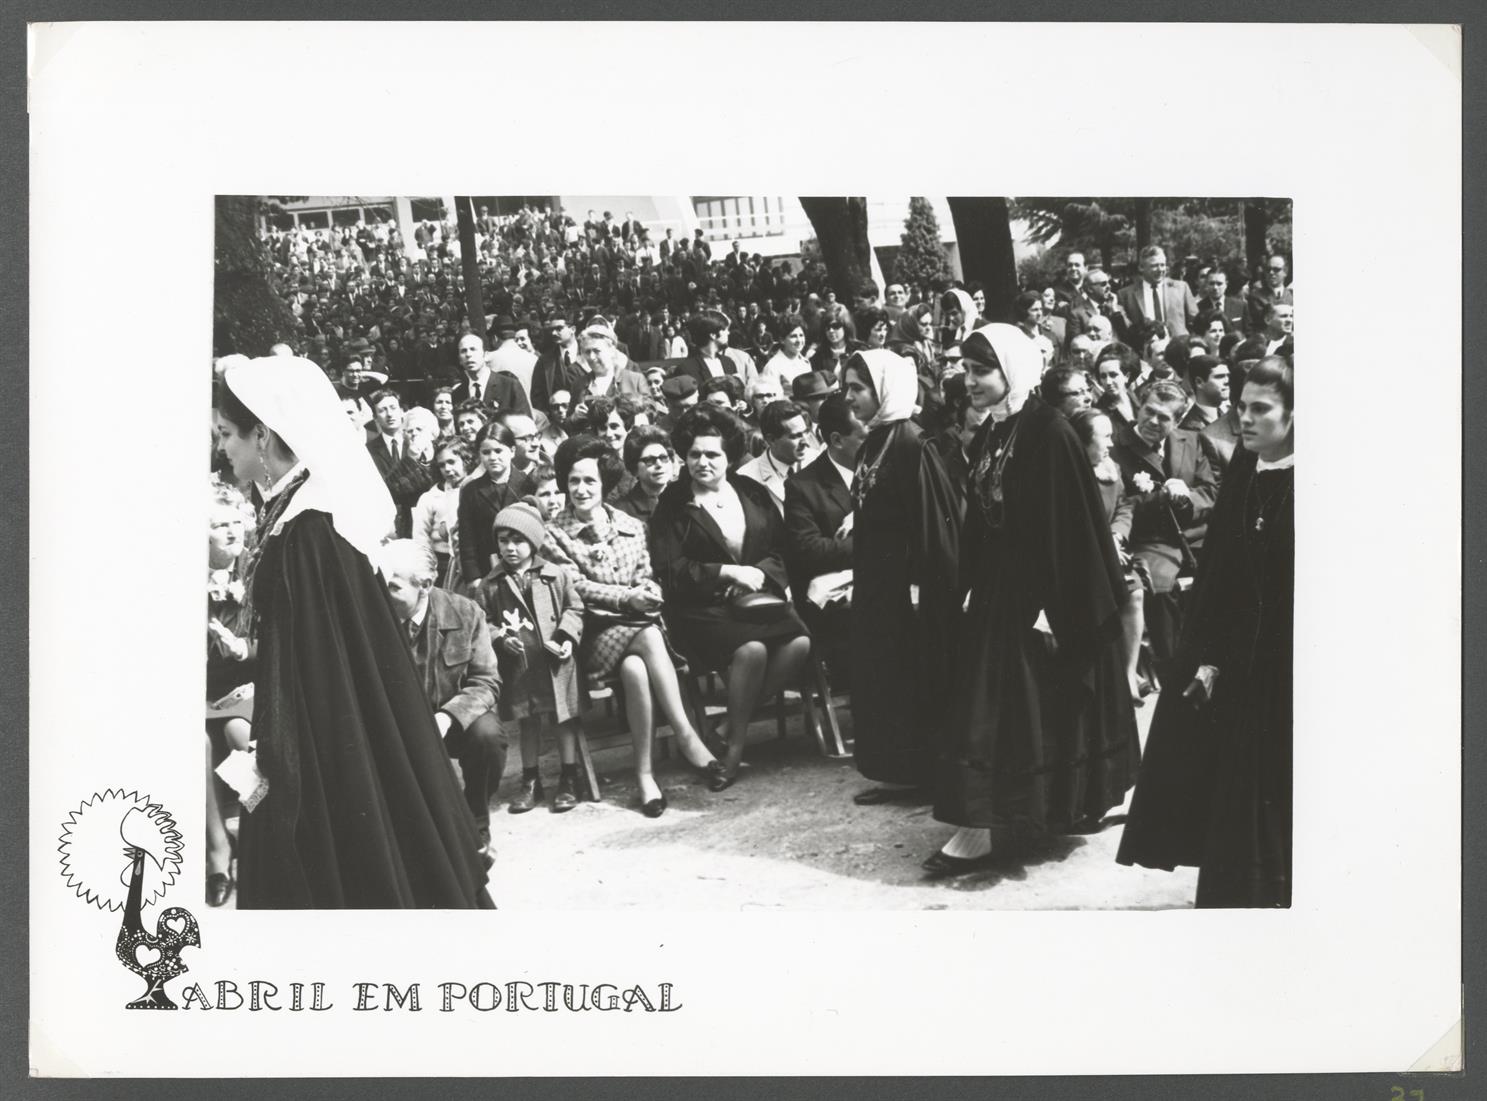 Abril em Portugal : Dia do Turista : desfile de trajes regionais da zona norte